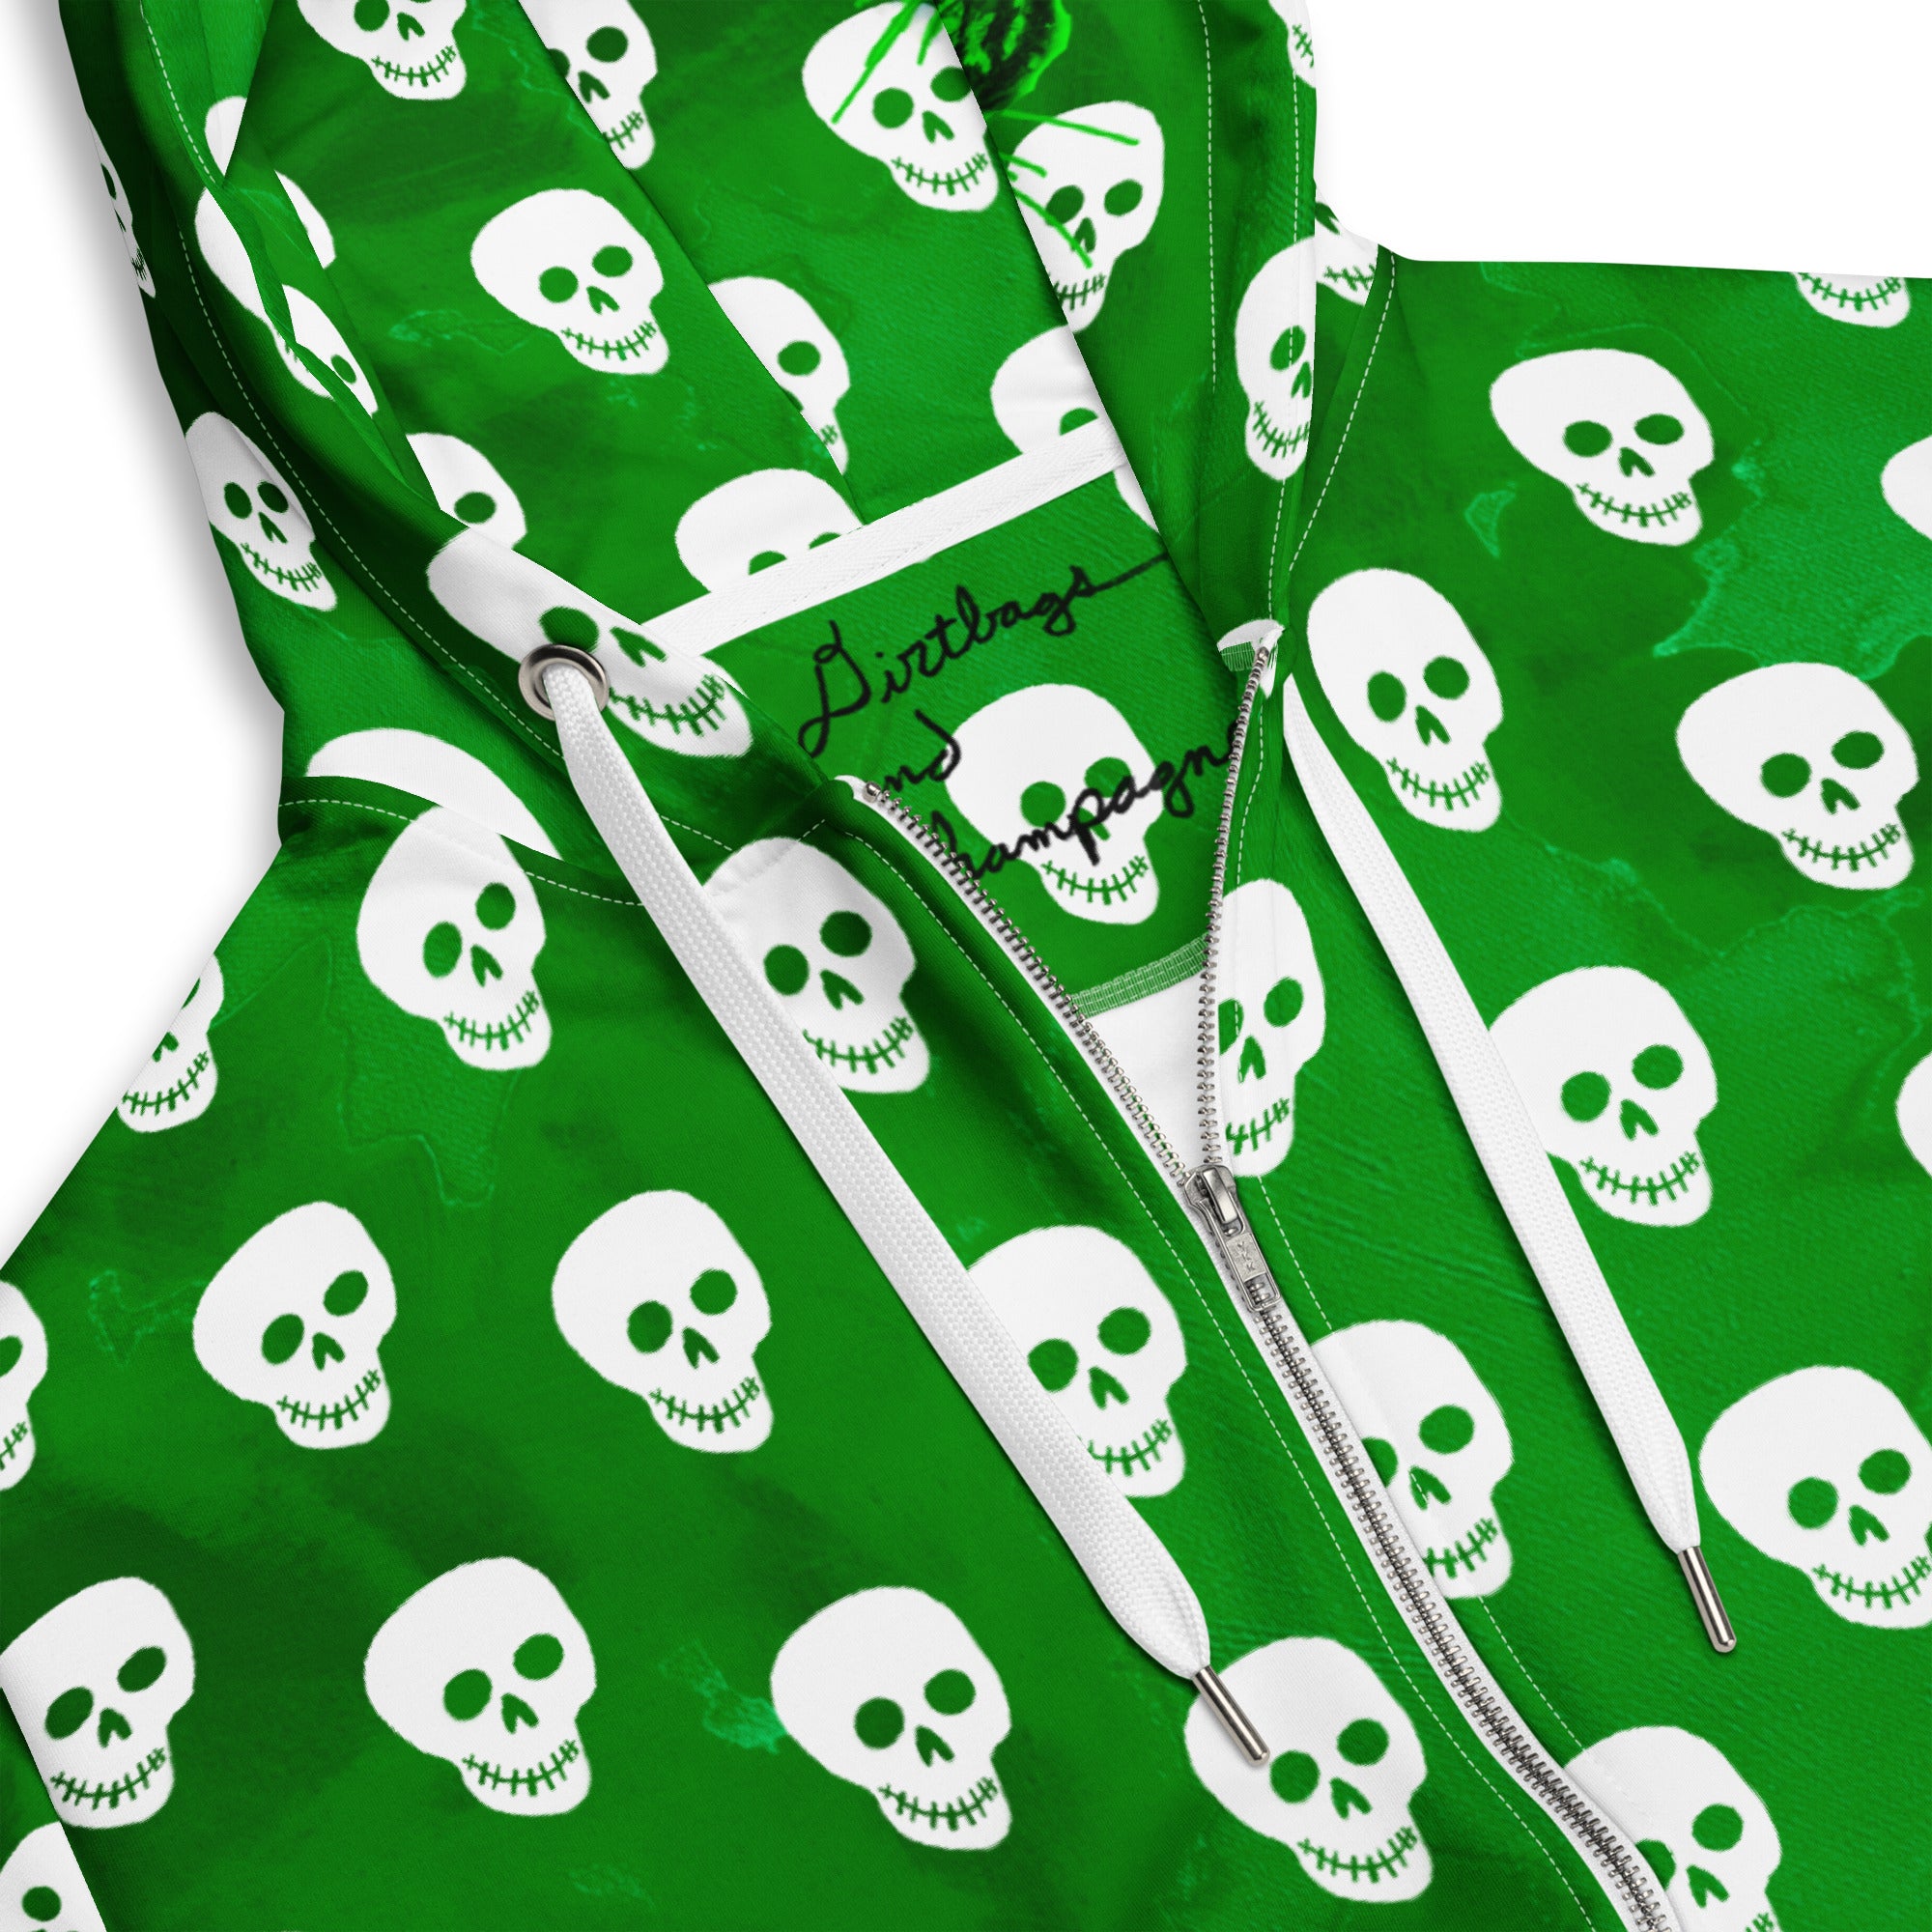 Skulls on green camo recycled Unisex zip hoodie